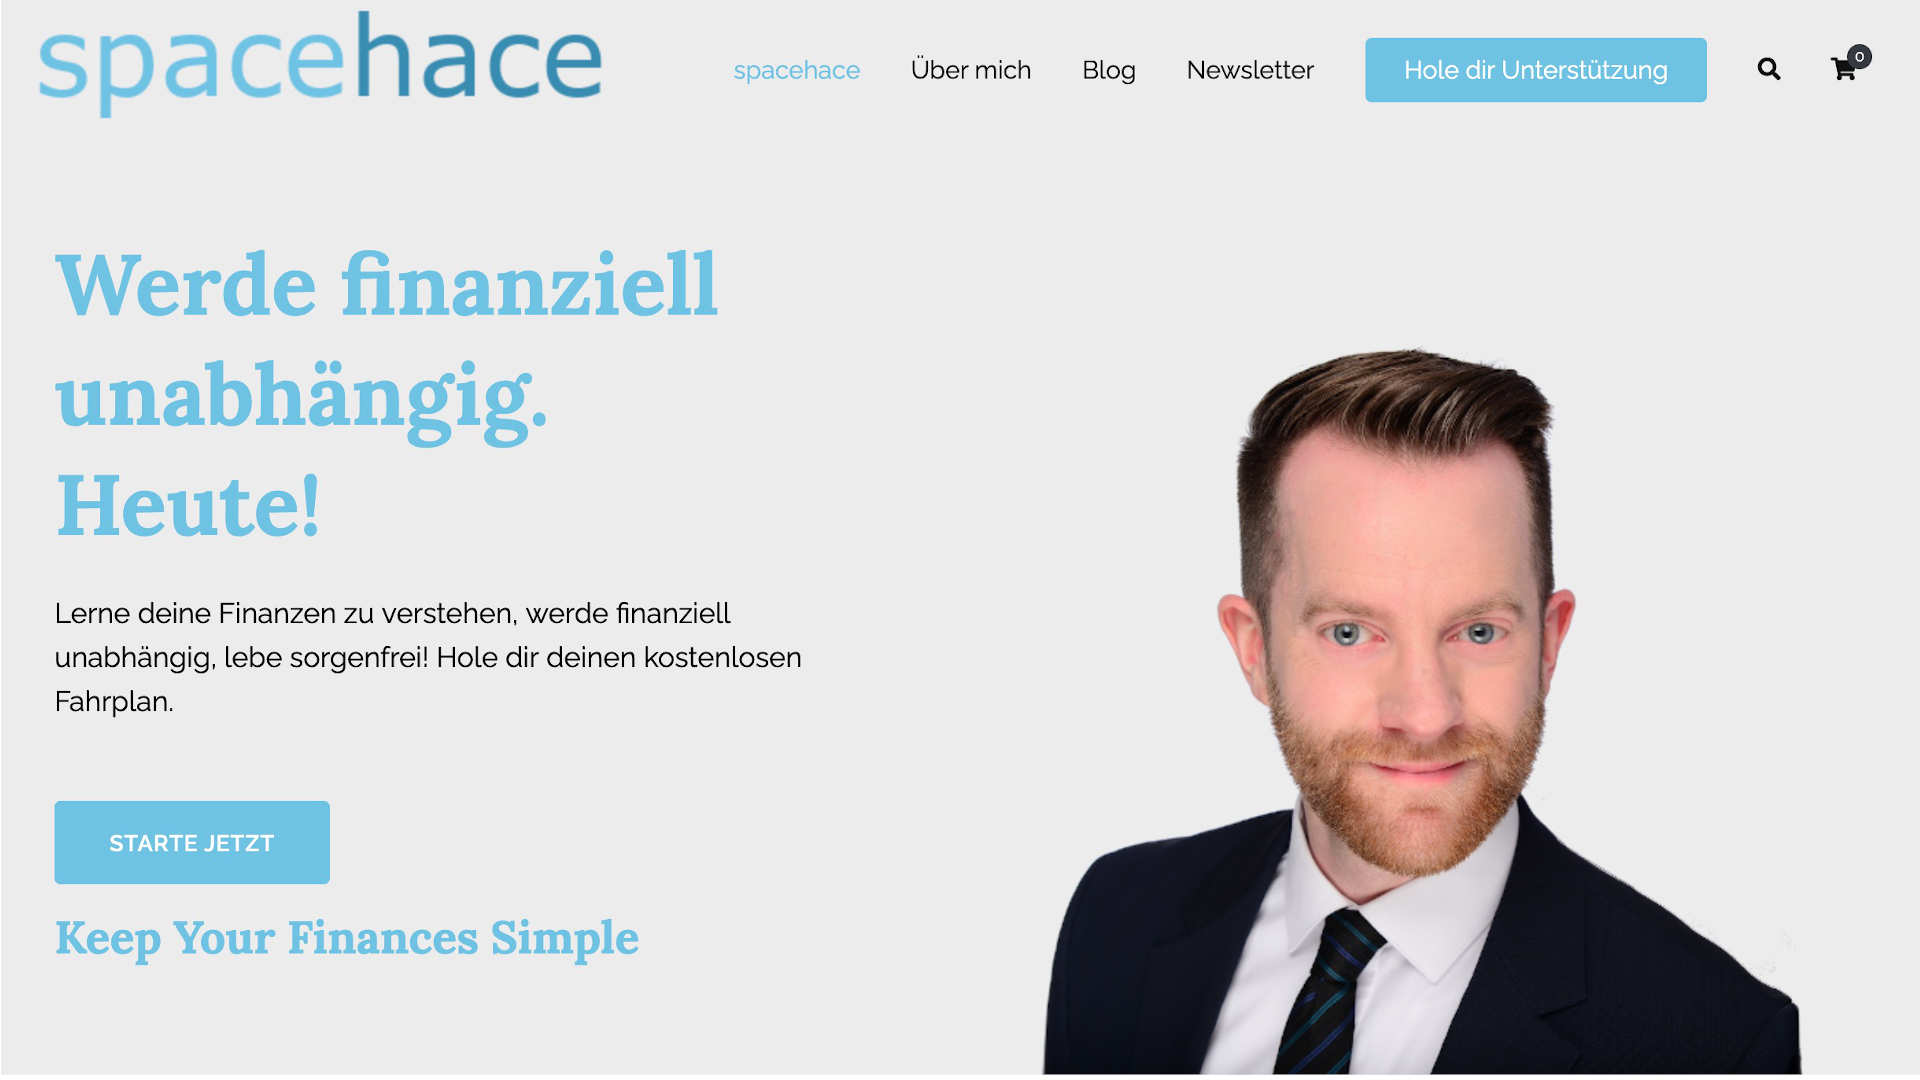 spacehace.com